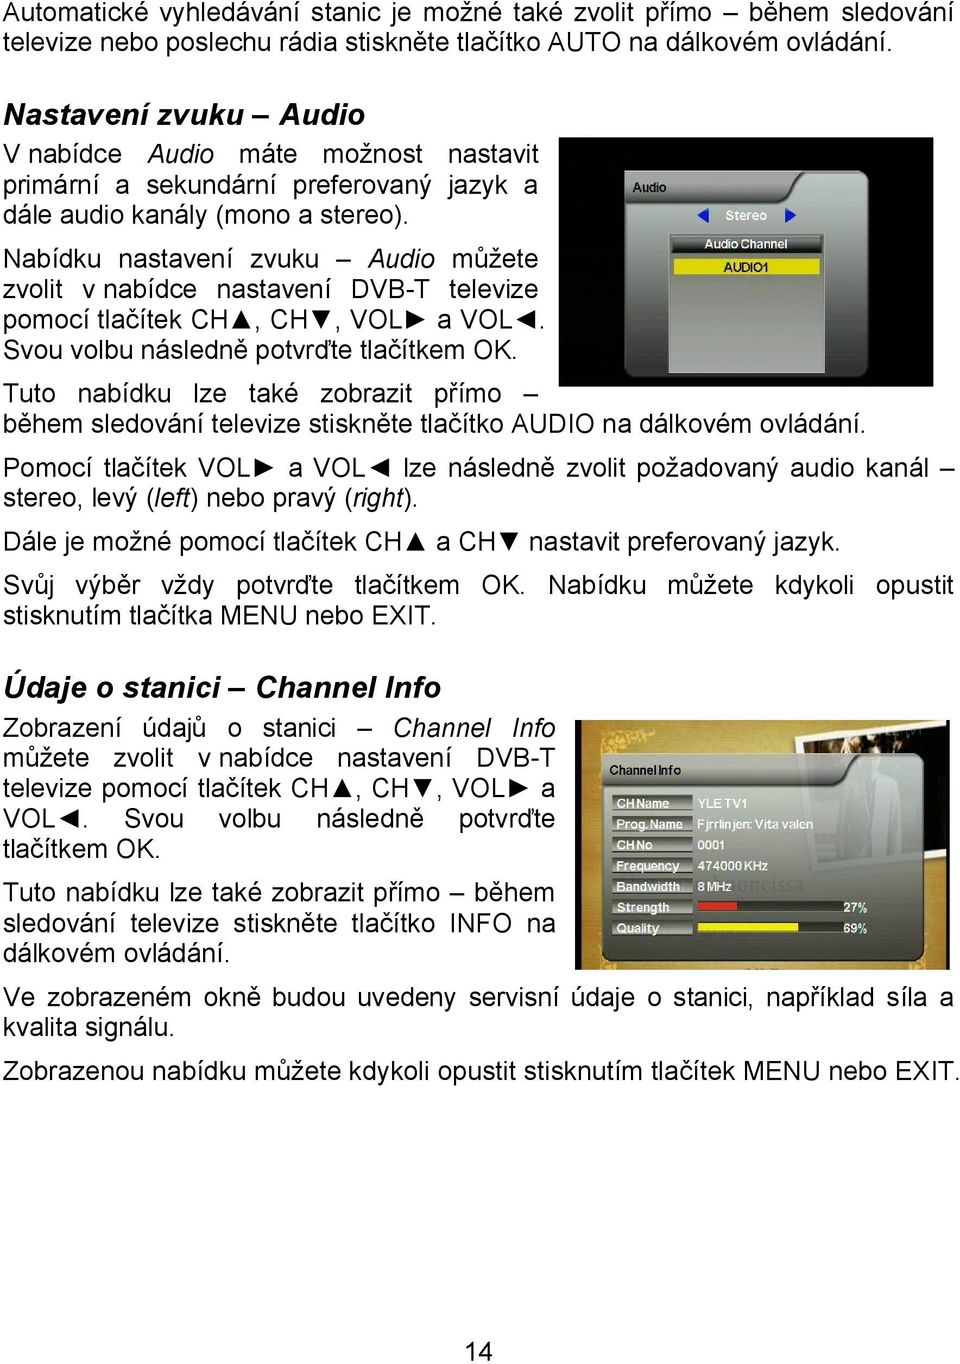 Nabídku nastavení zvuku Audio můžete zvolit v nabídce nastavení DVB-T televize pomocí tlačítek CH, CH, VOL a VOL. Svou volbu následně potvrďte tlačítkem OK.